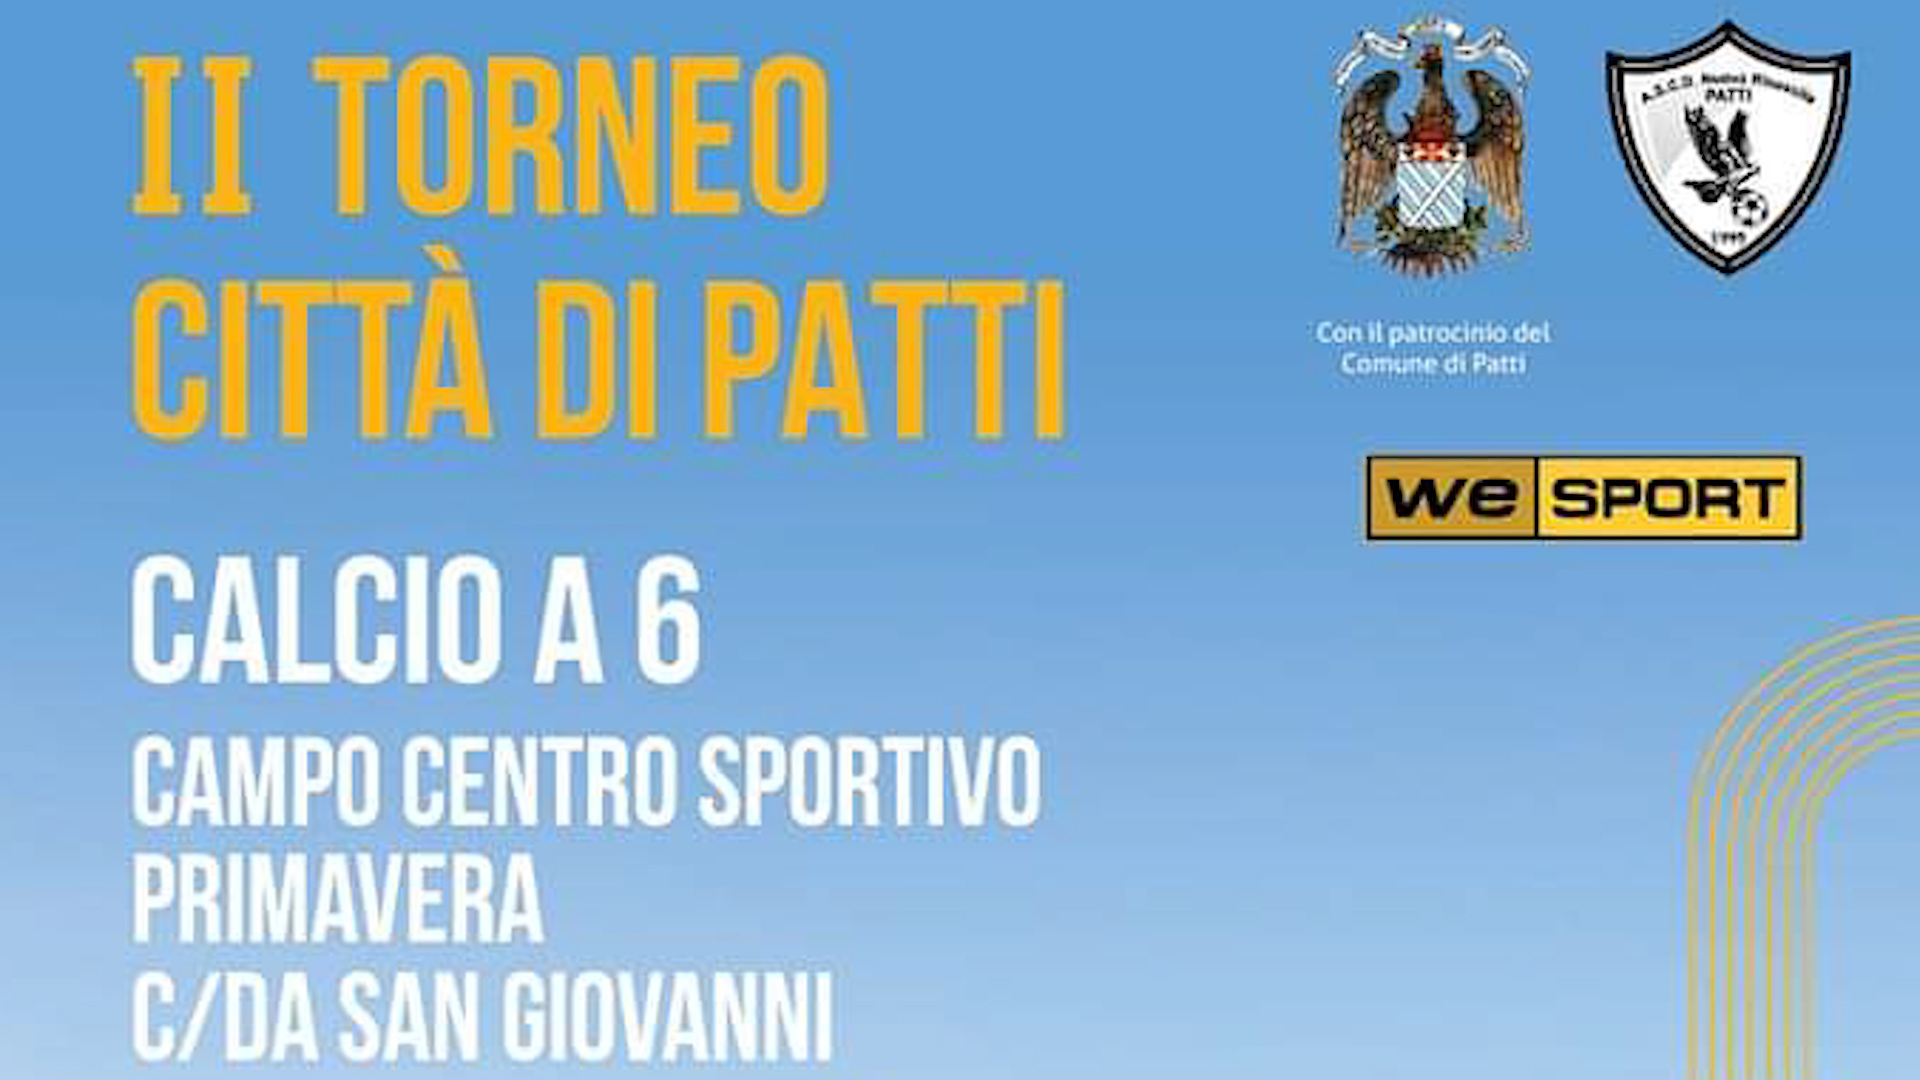 II Torneo Città di Patti: si riparte al Centro Sportivo “Primavera” di San Giovanni